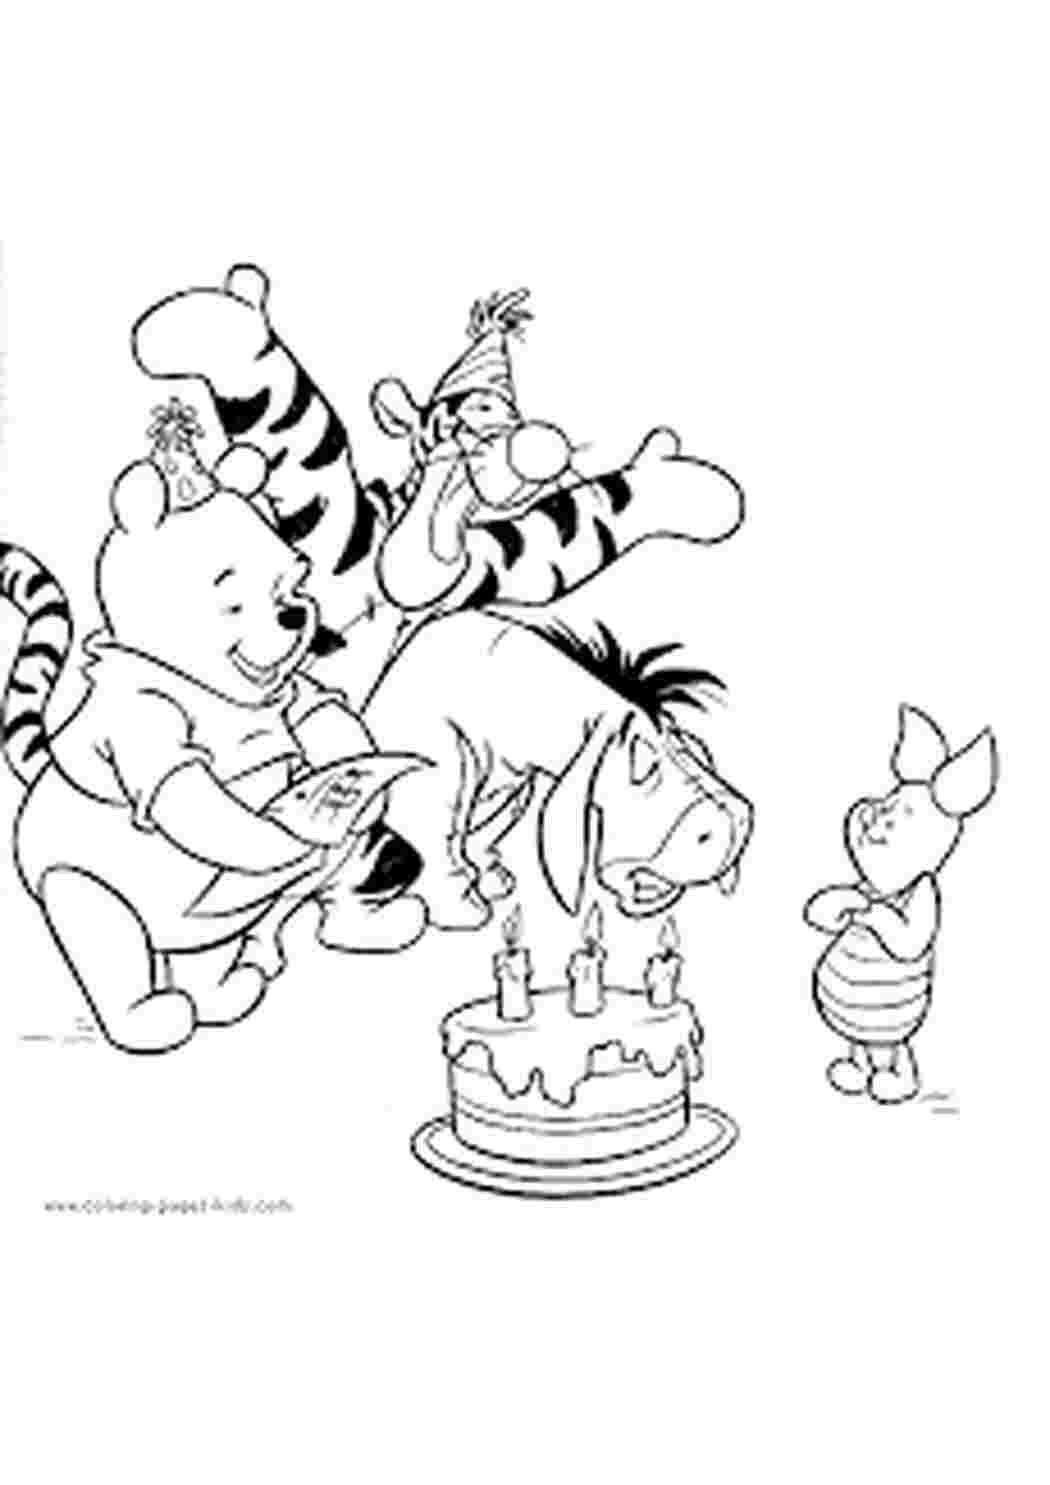 Рисунок-разукрашка день рождения Винни пуха